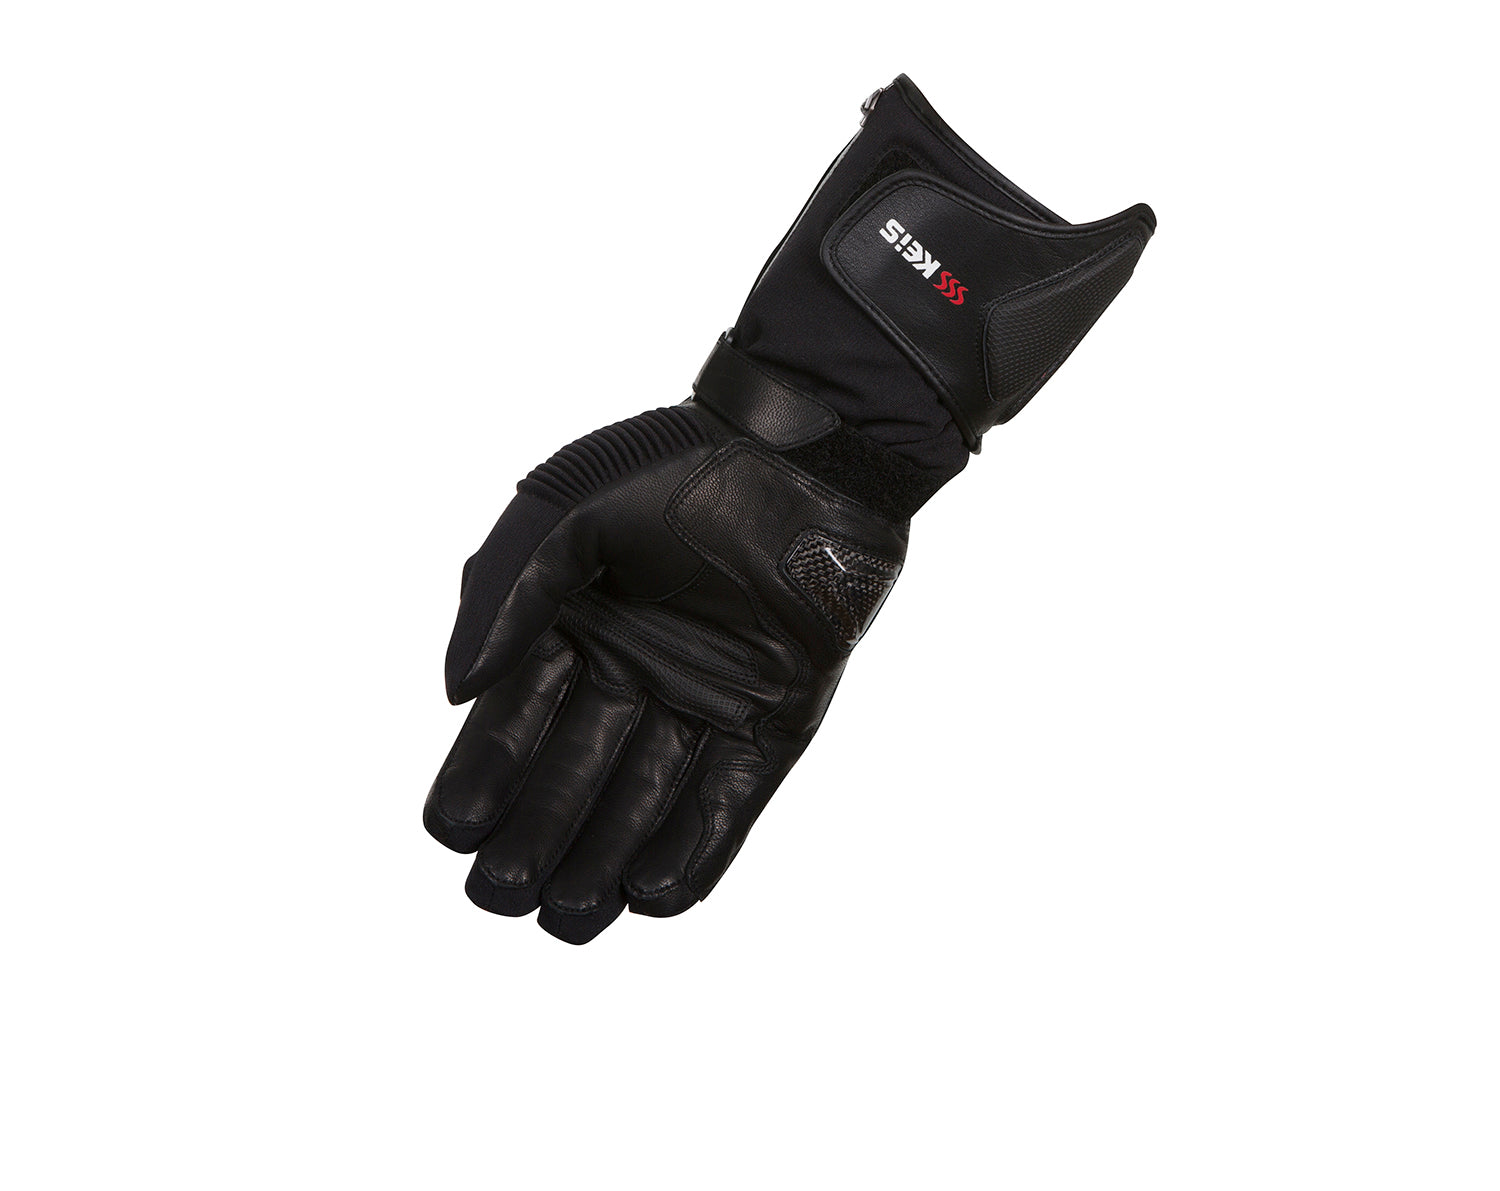 Gilets et gants chauffants Keis : Une solution complète - Moto-Station